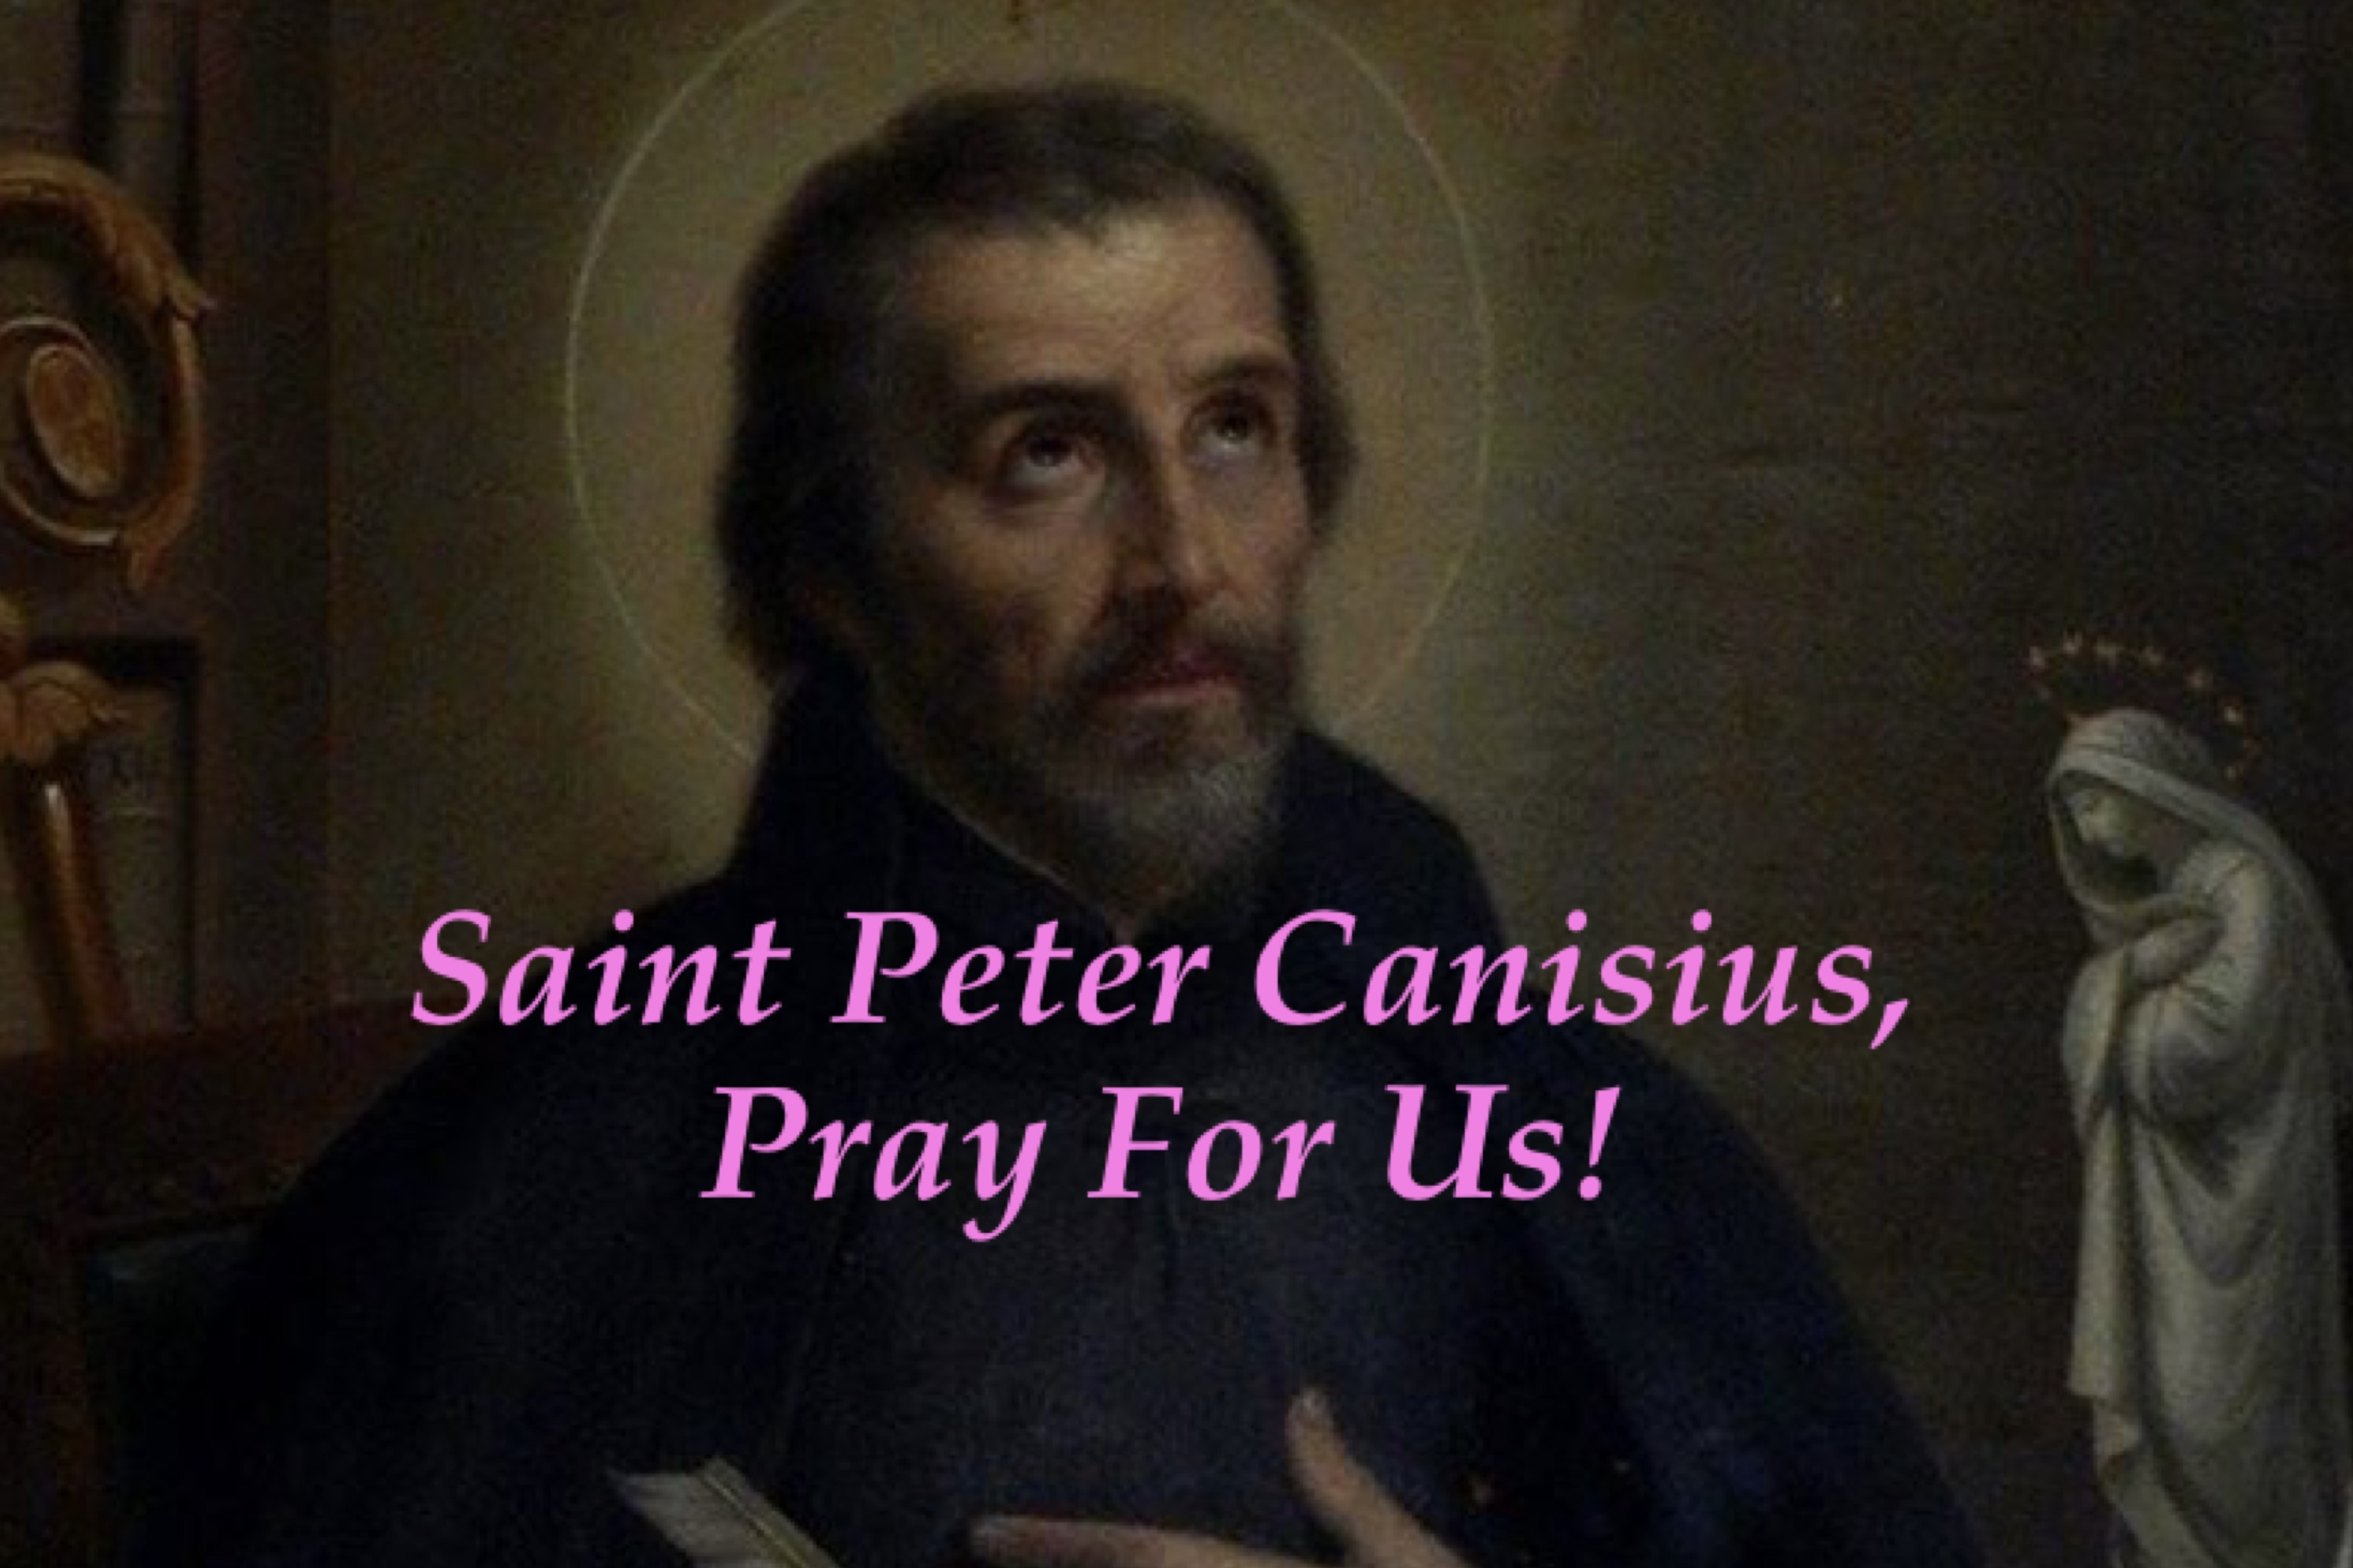 21st December - Saint Peter Canisius